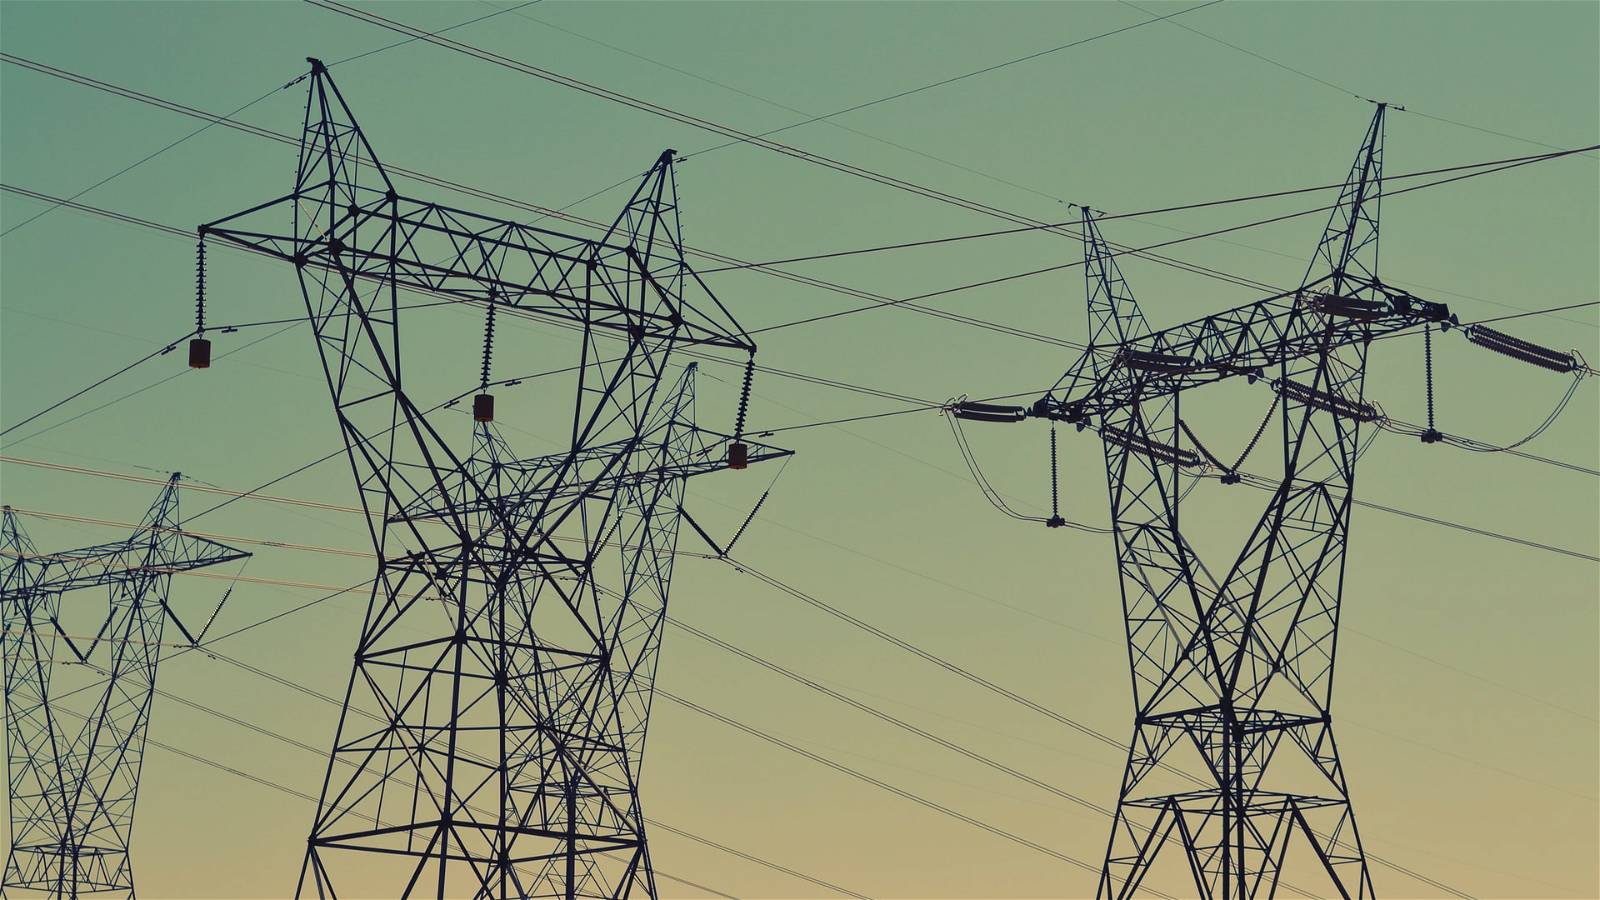 Alman İmalat Sektörünün Uluslararası Rekabeti Tehlikede: Yüksek Elektrik Fiyatları Neden Olabilir